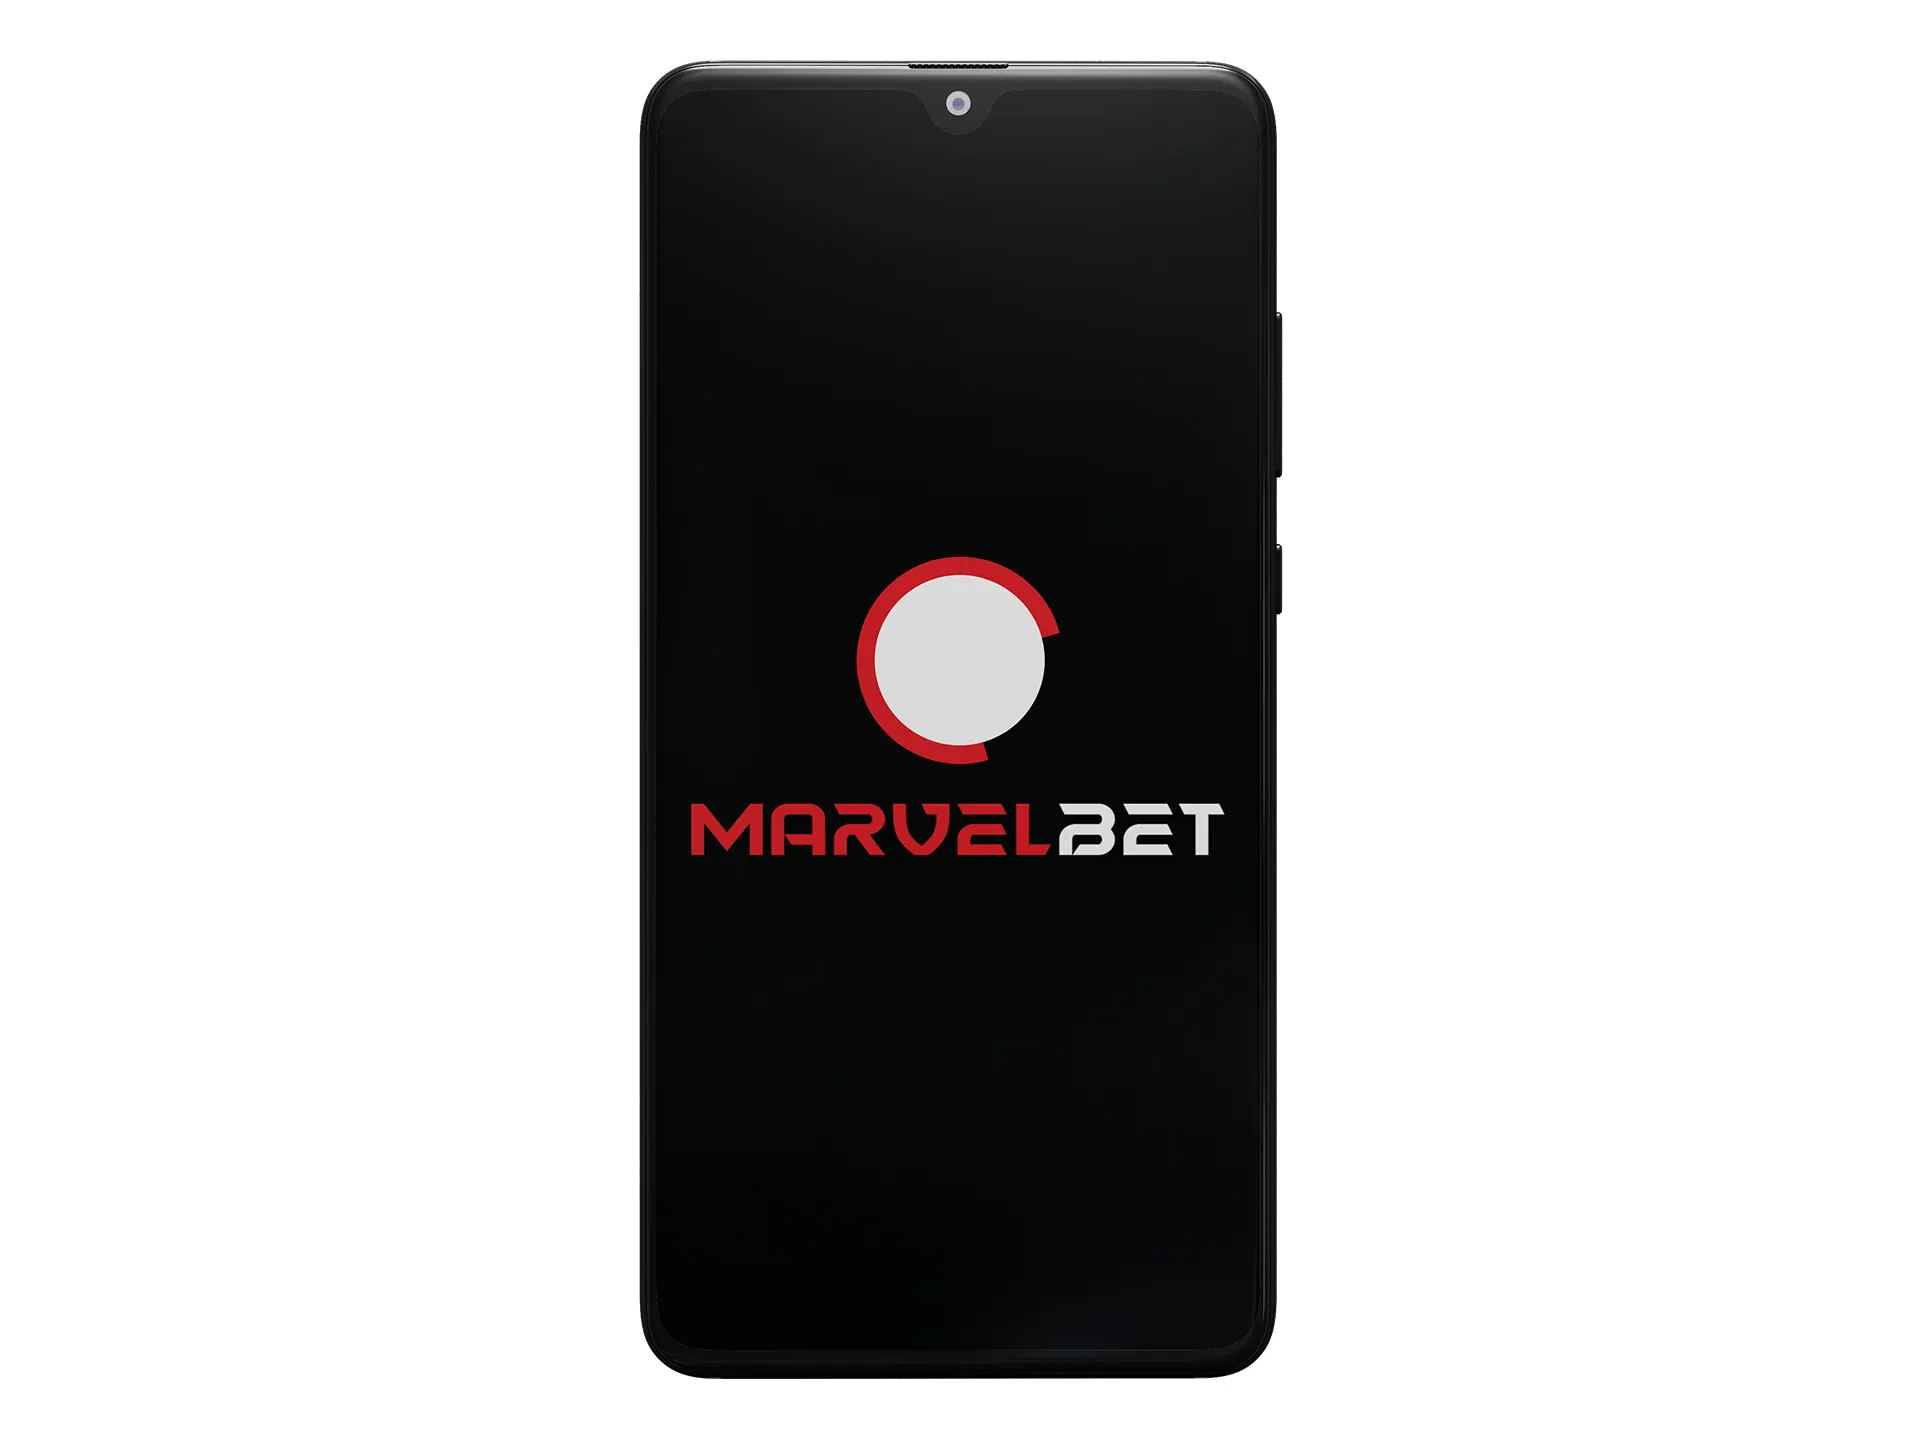 Start Marvelbet app installation.